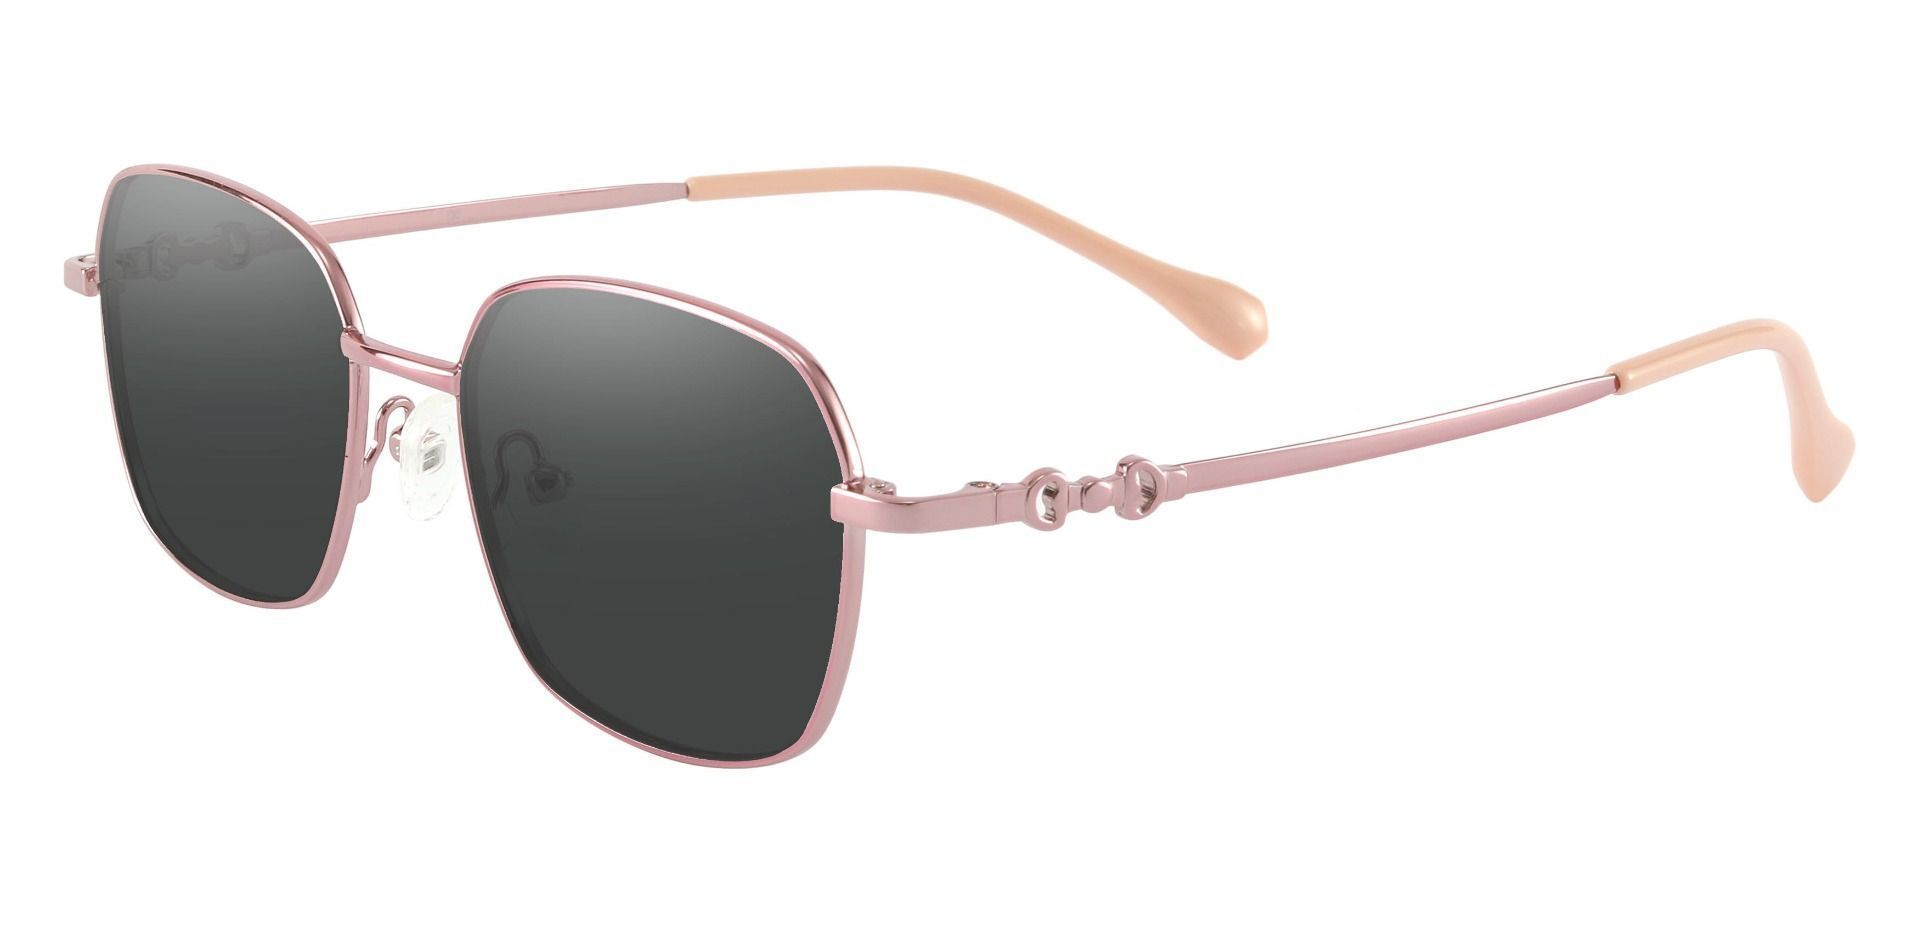 Averill Geometric Progressive Sunglasses - Rose Gold Frame With Gray Lenses